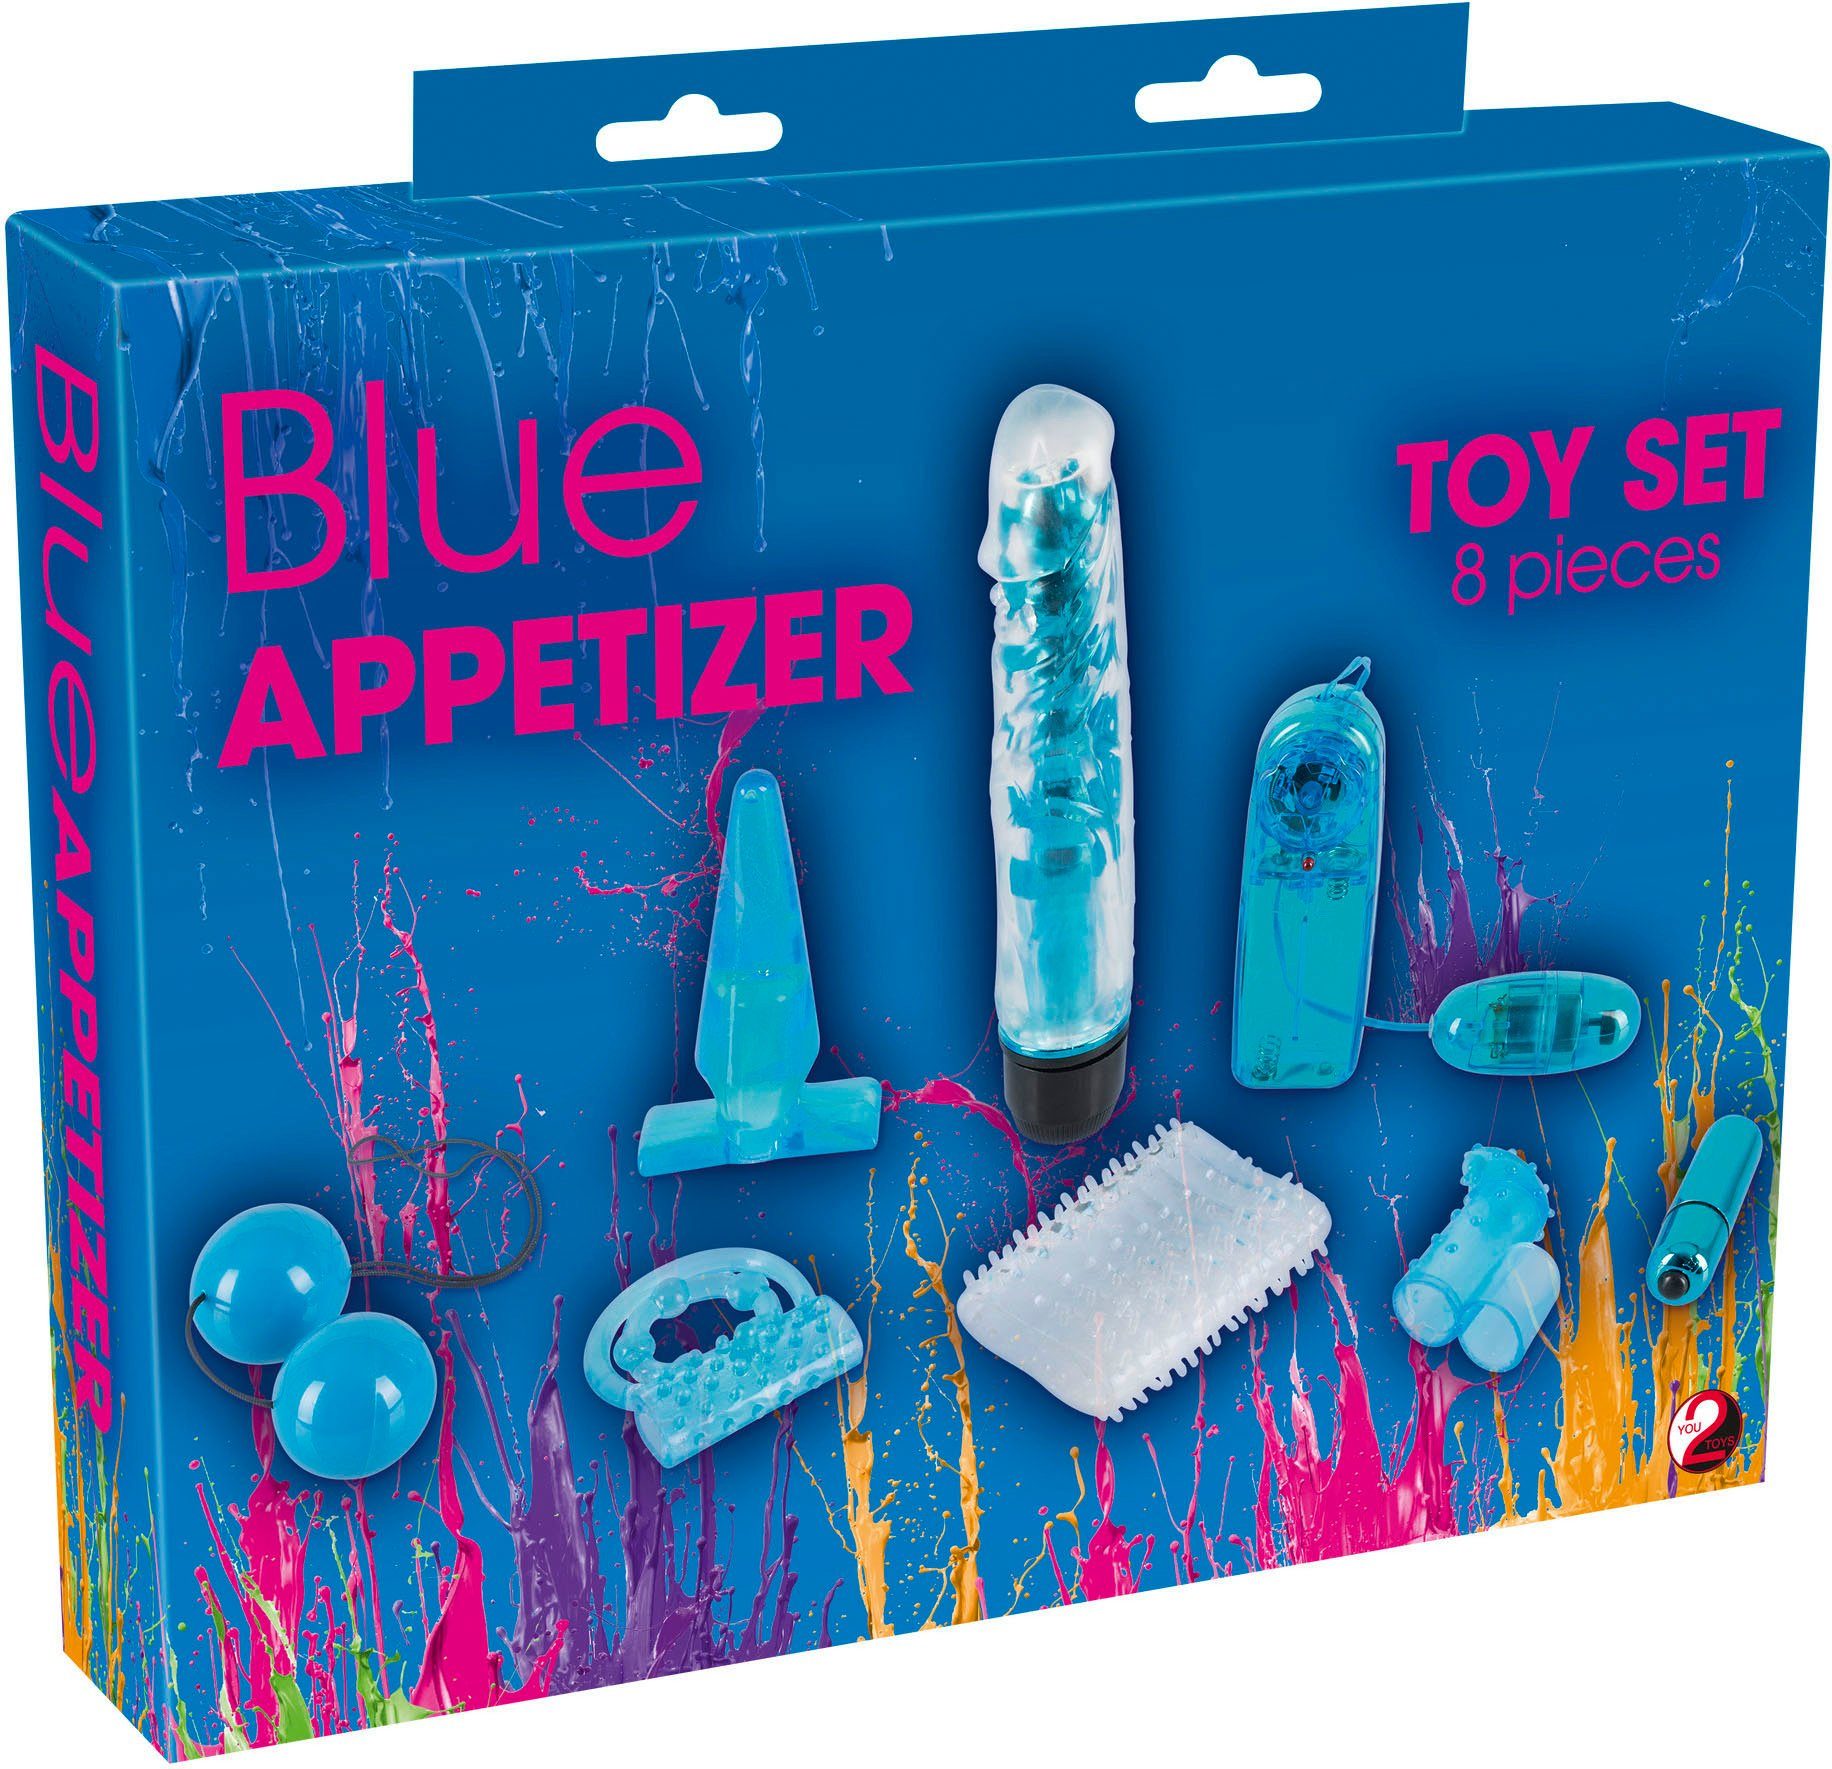 You2Toys Erotik-Toy-Set Appetizer, 8-tlg. Blue